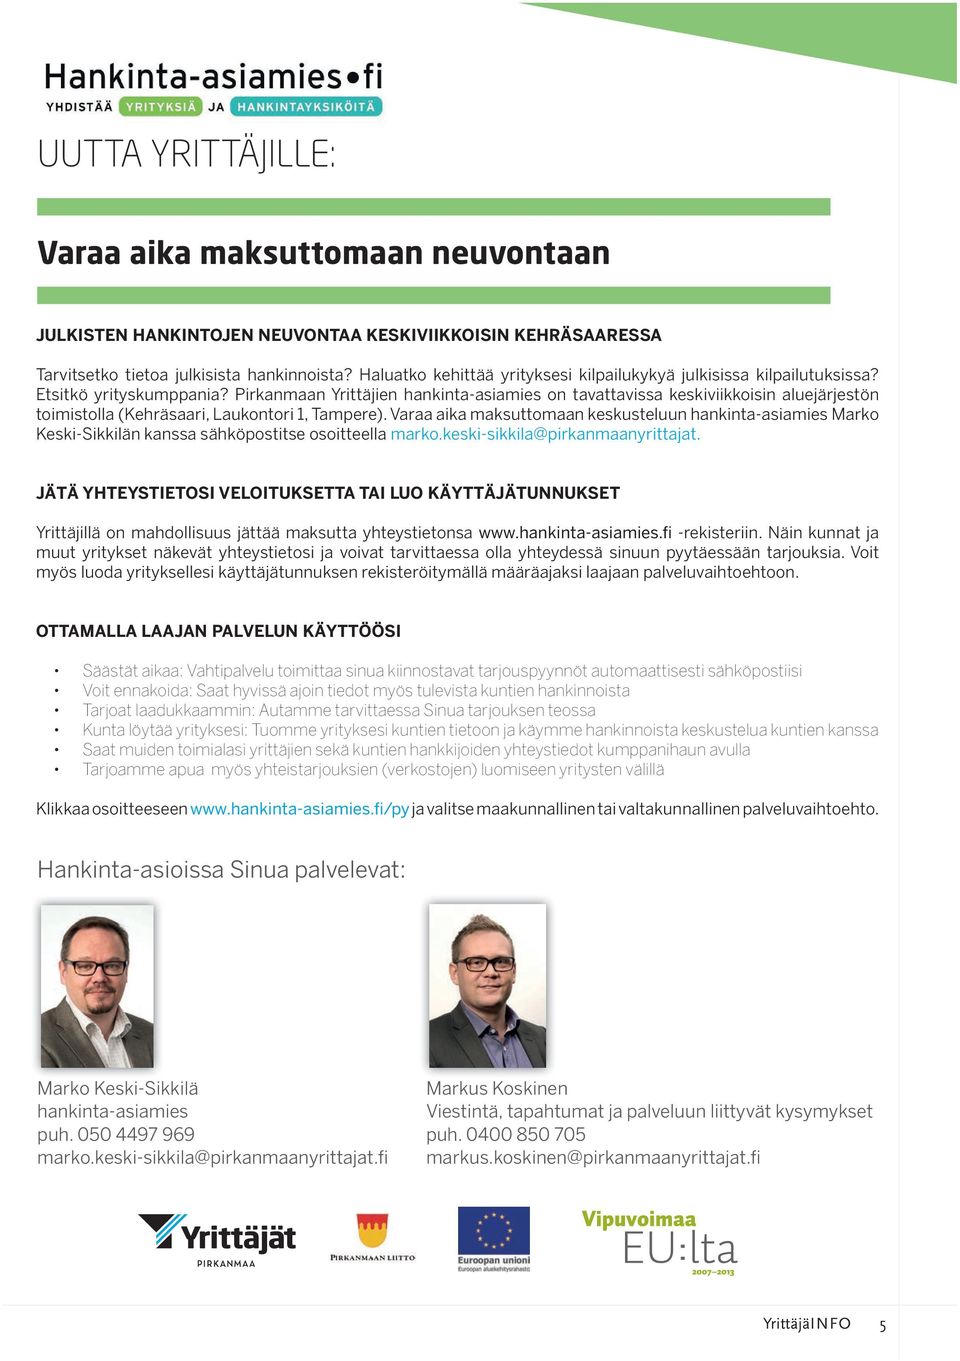 Pirkanmaan Yrittäjien hankinta-asiamies on tavattavissa keskiviikkoisin aluejärjestön toimistolla (Kehräsaari, Laukontori 1, Tampere).